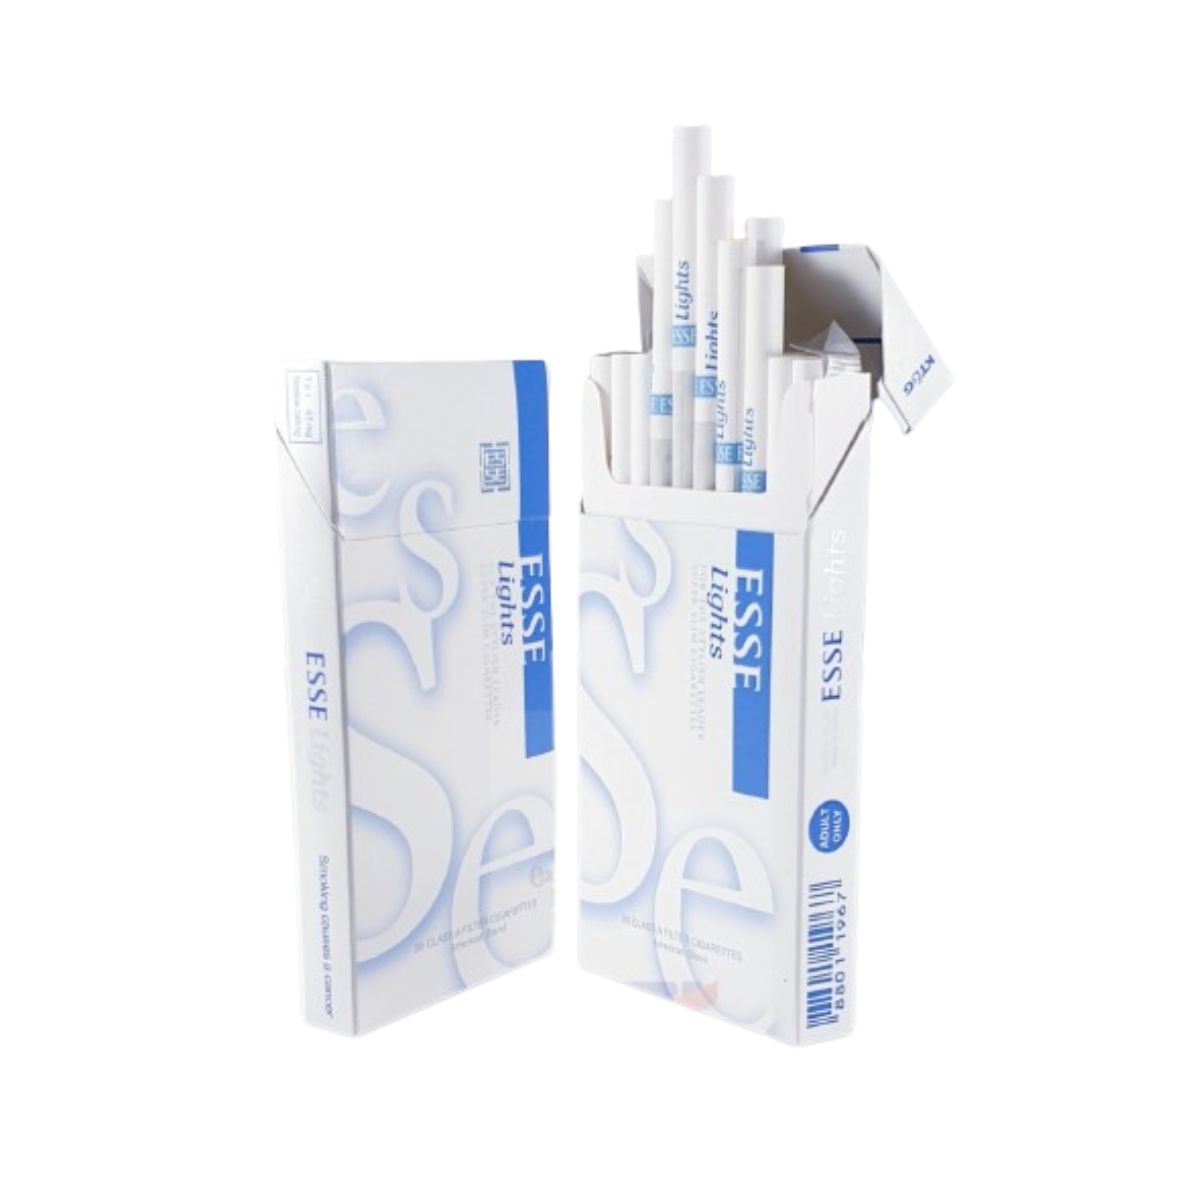 Esse Lights - Super Slim Cigarettes - Pack Of 20 Pcs